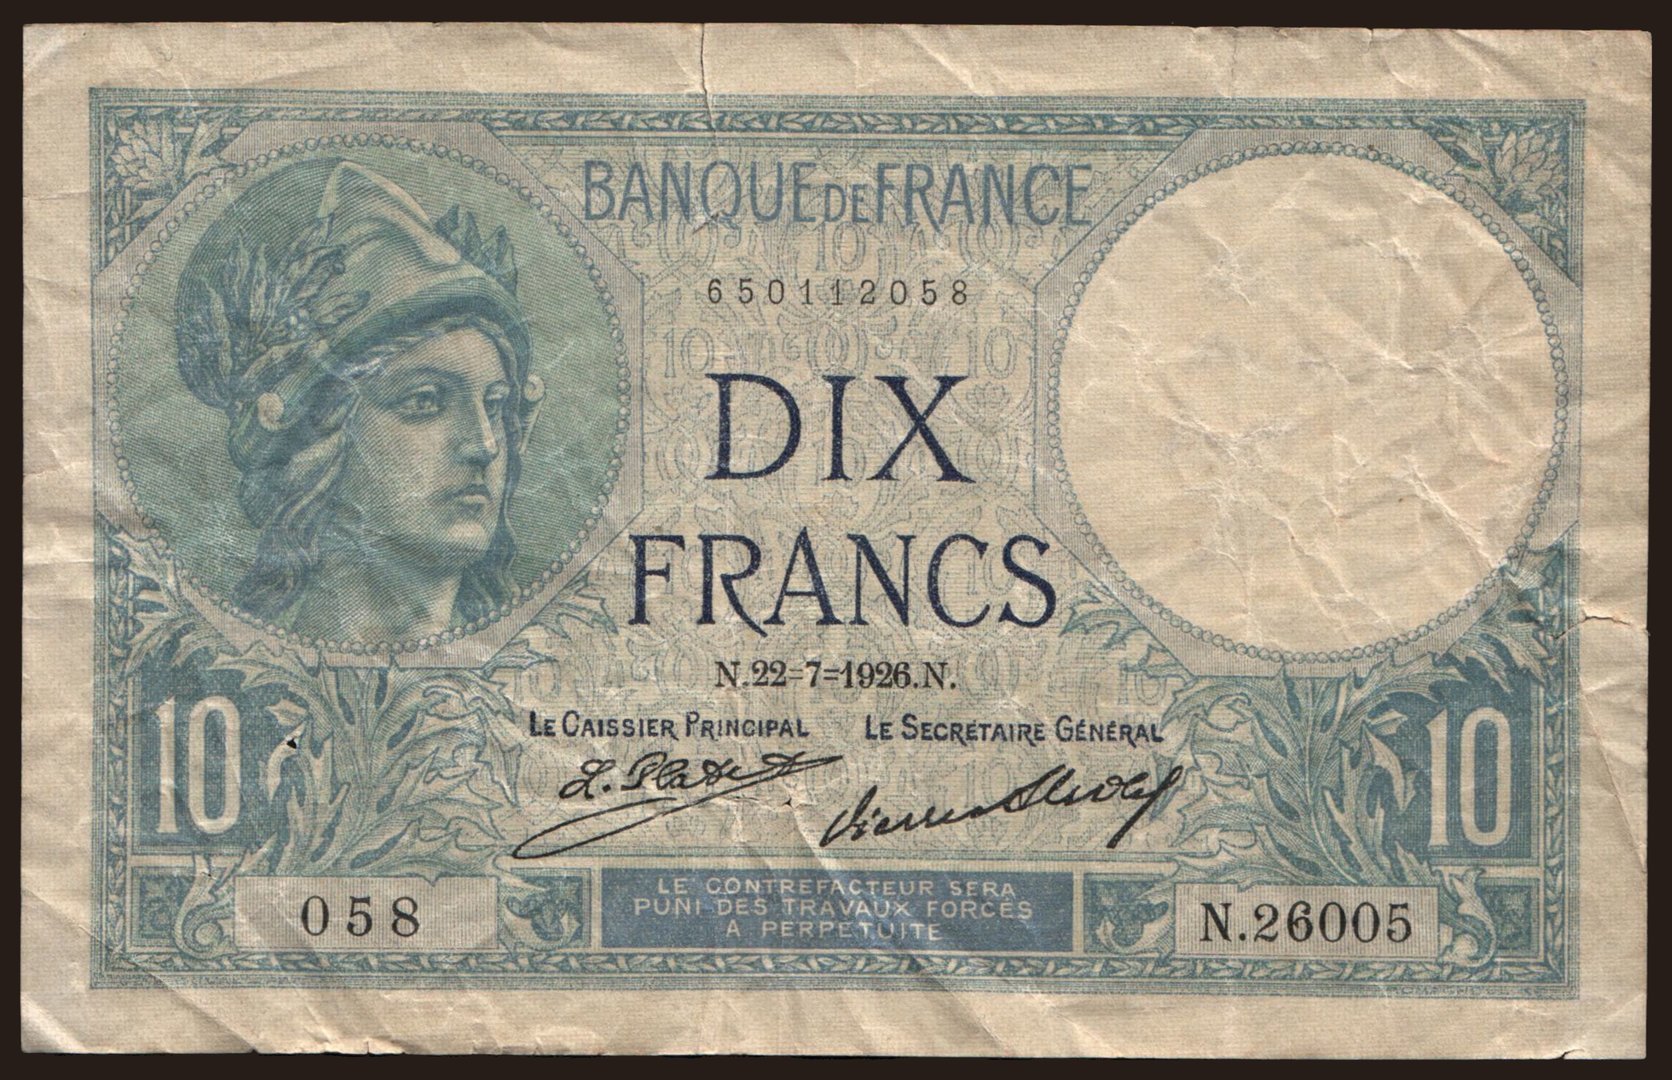 10 francs, 1926